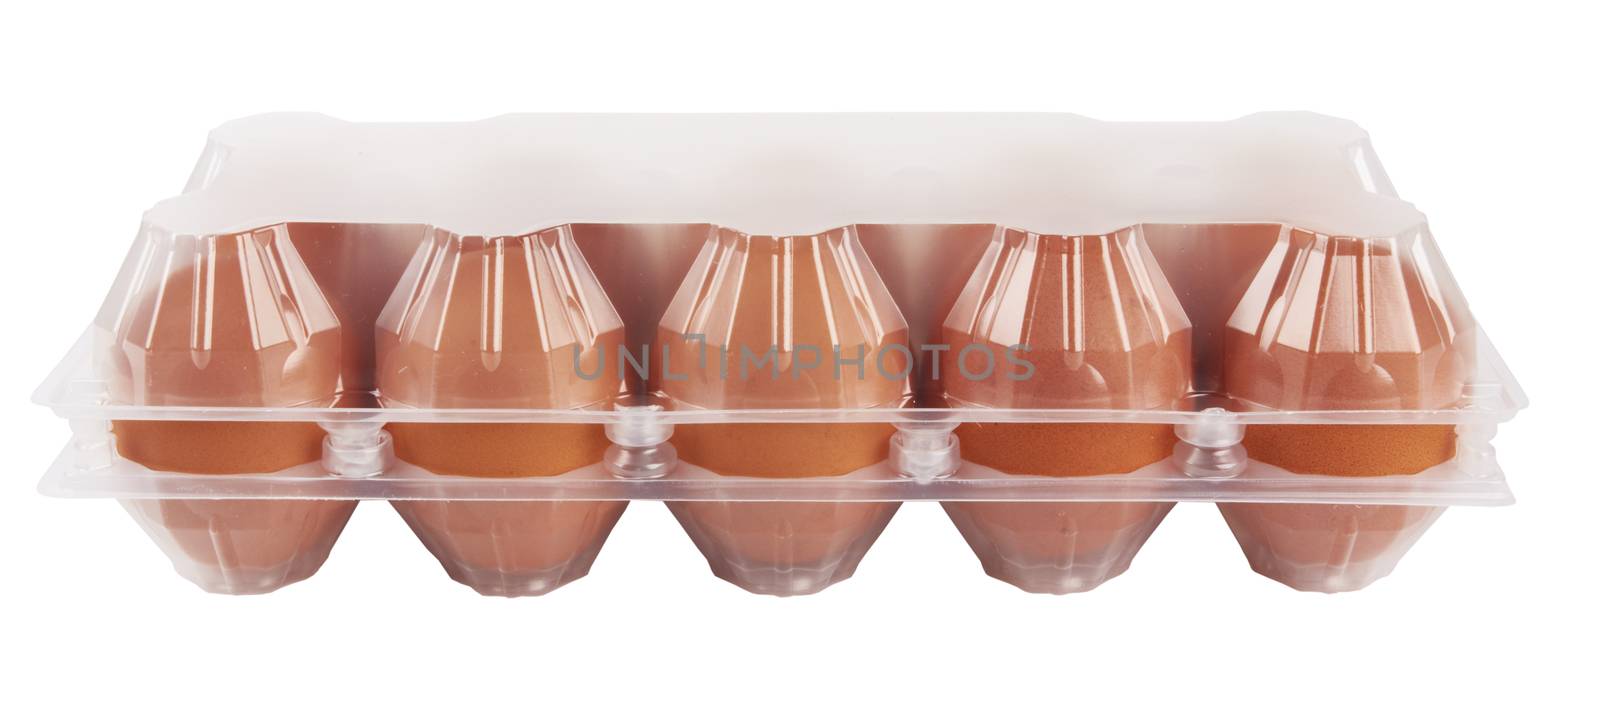 Eggs in plastic by pioneer111